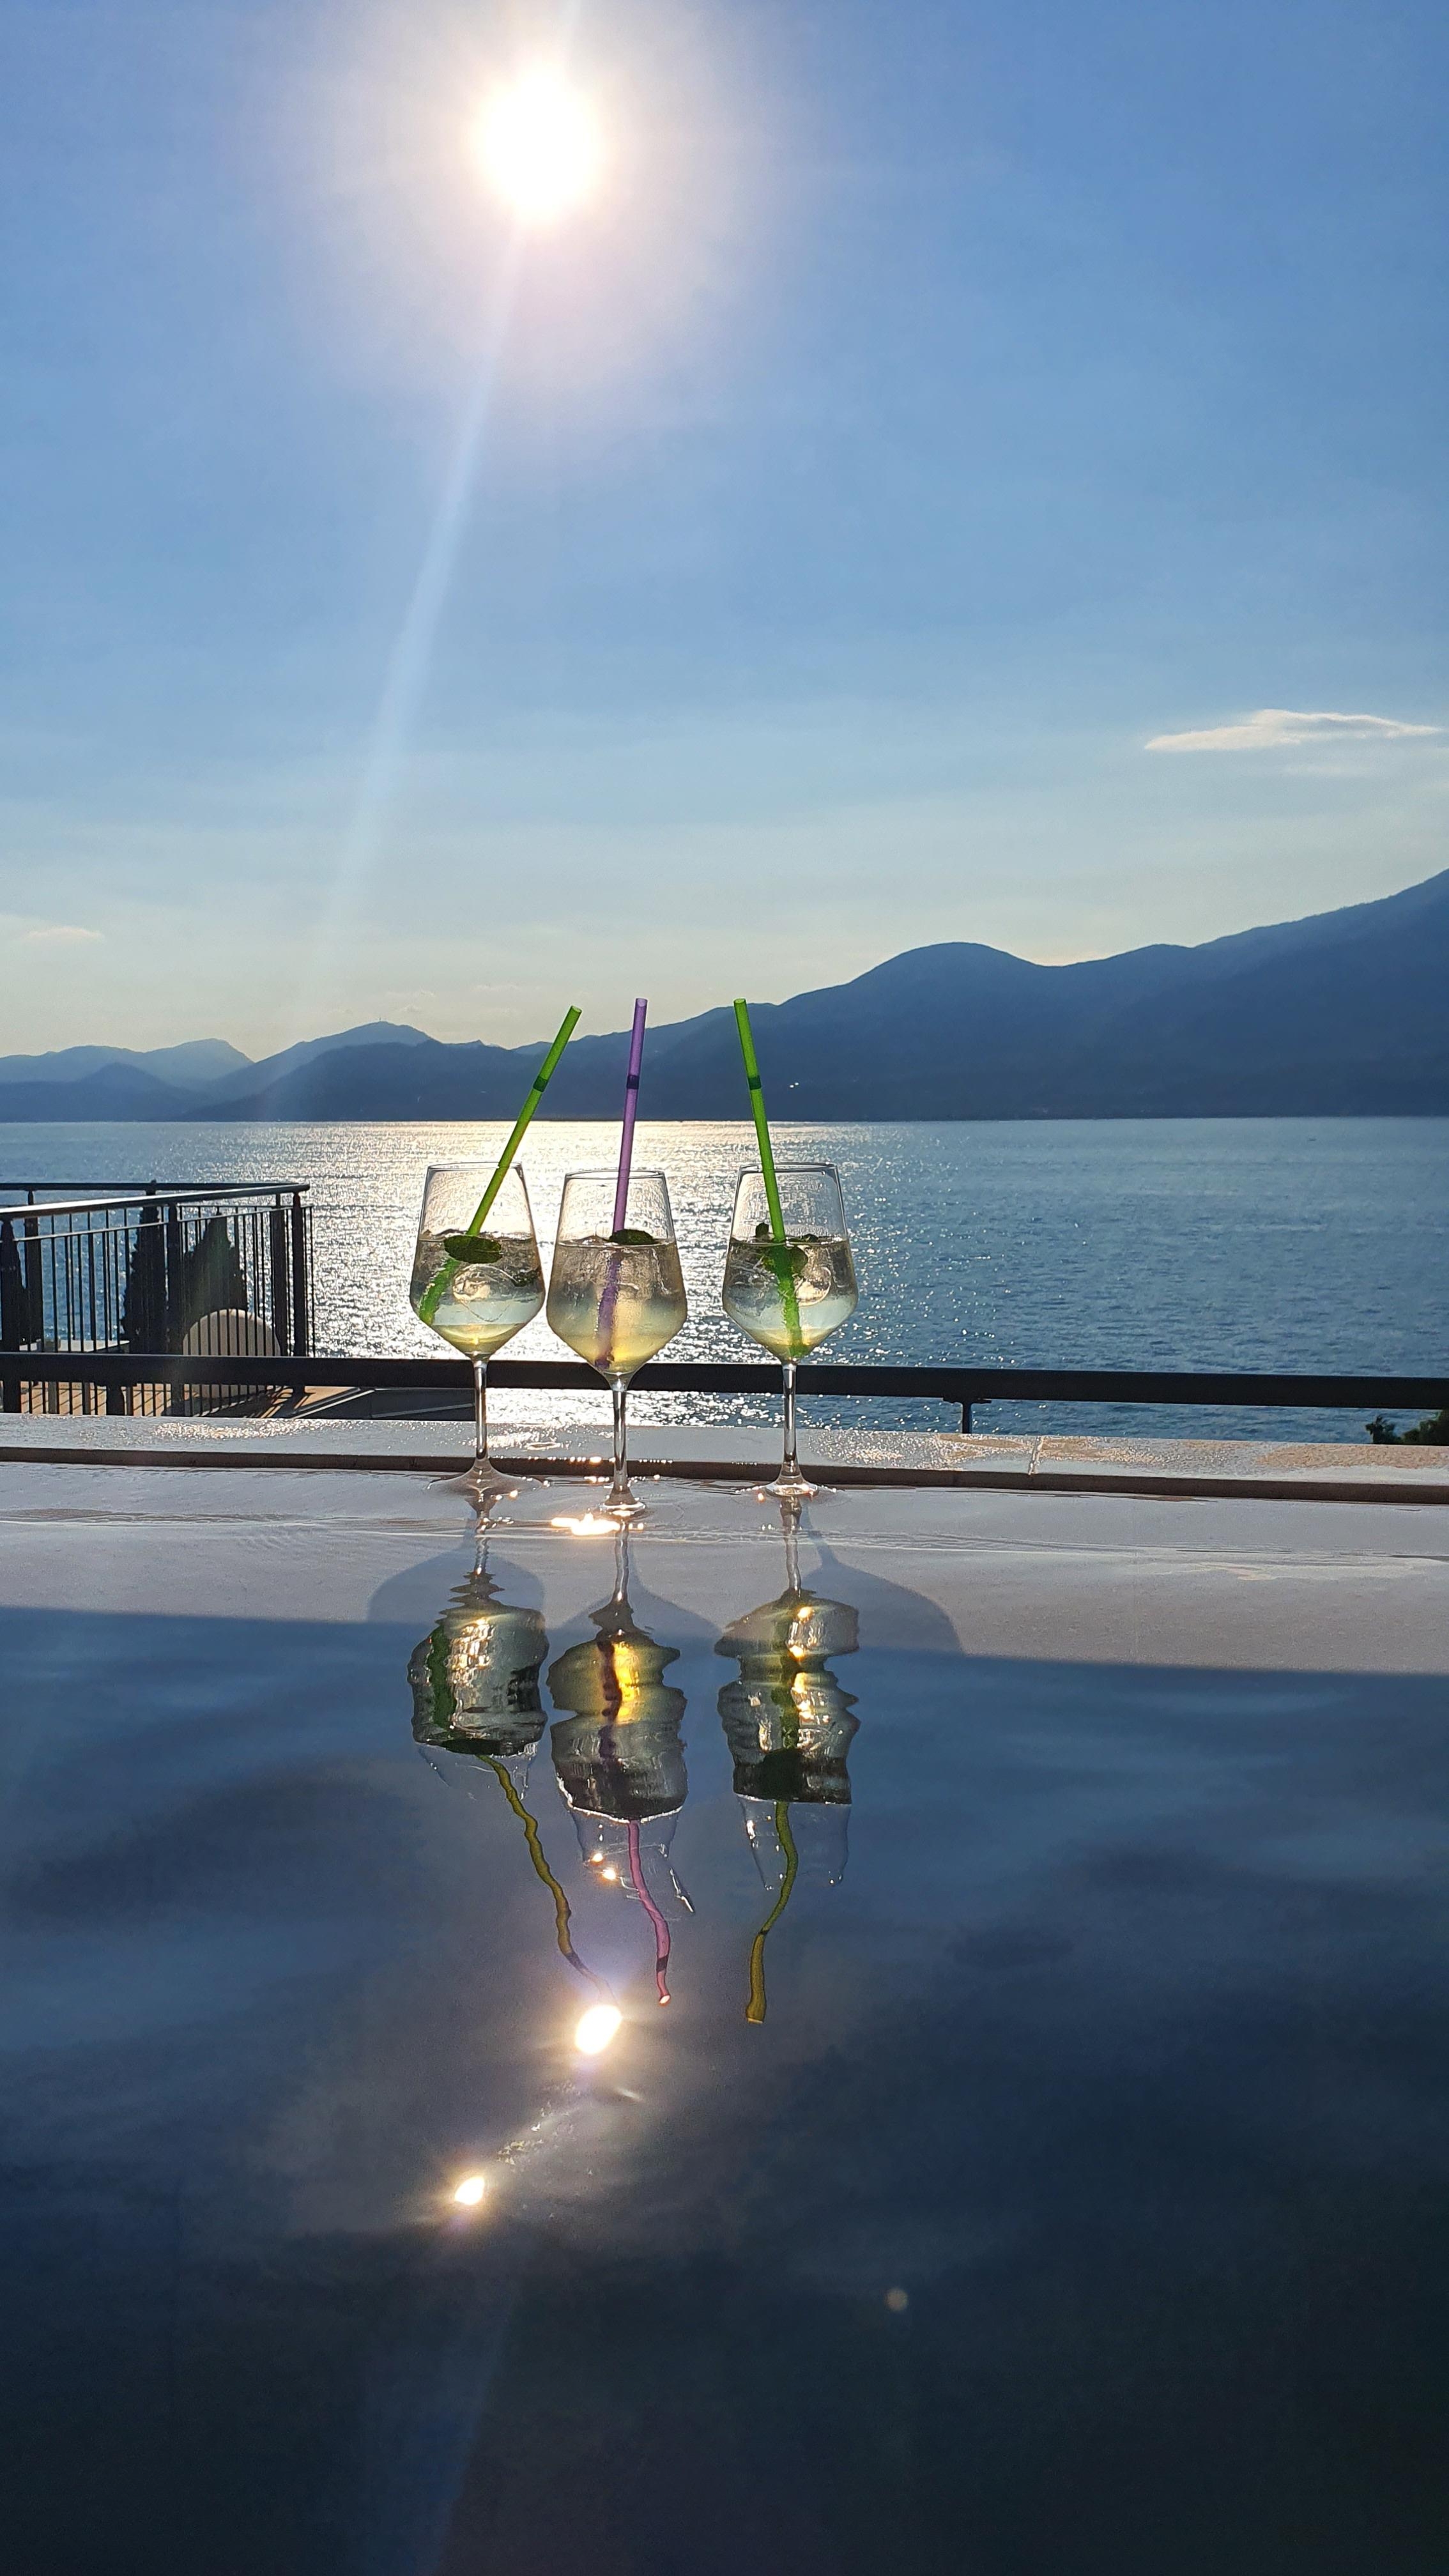 #travelchallenge #wellness am schönen Gardasee
#lagodigarda